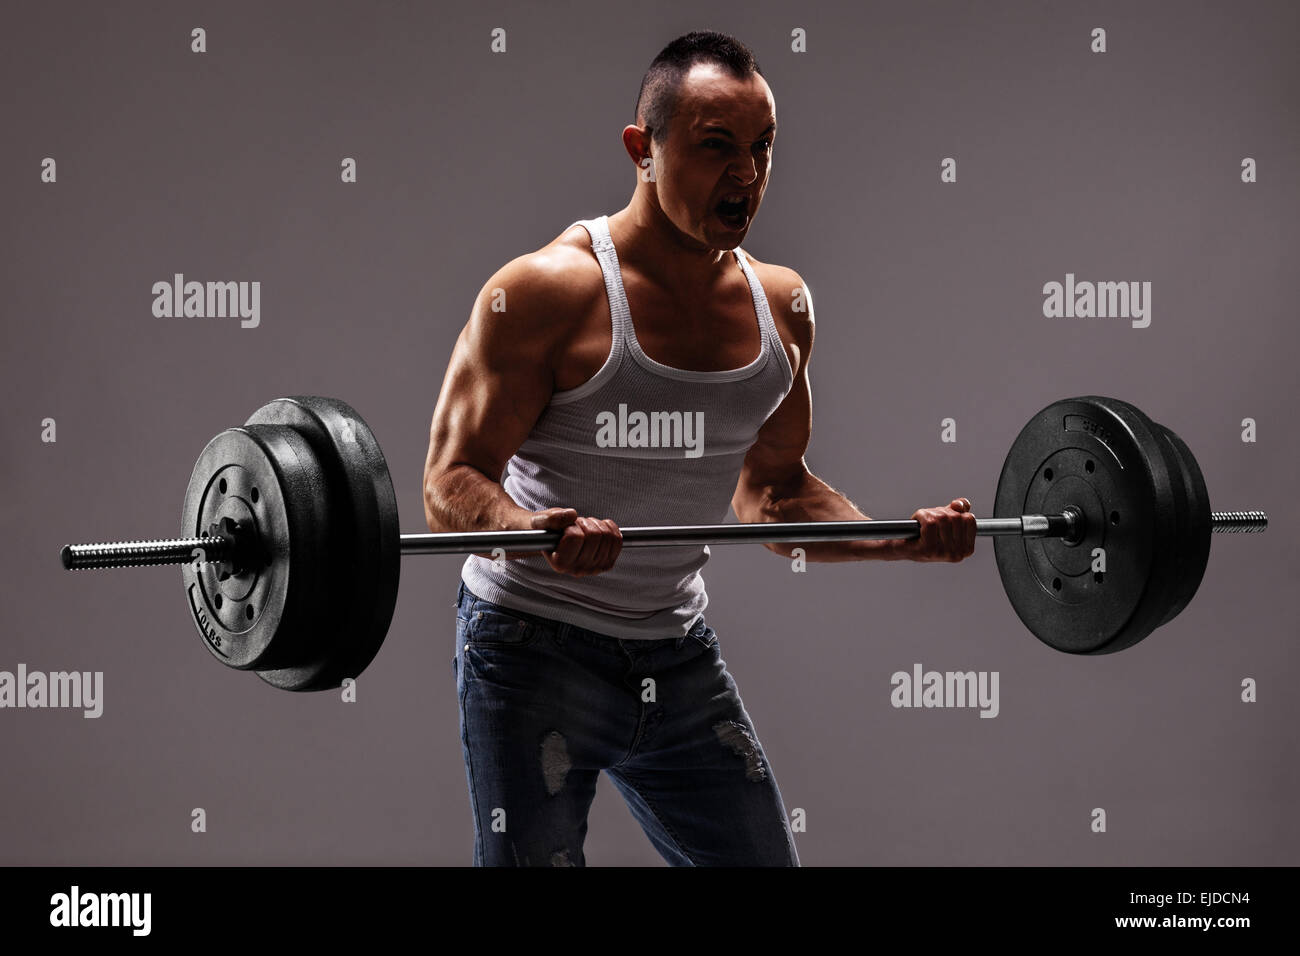 Forte uomo muscolare sollevando una pesante barbell su sfondo grigio scuro Foto Stock